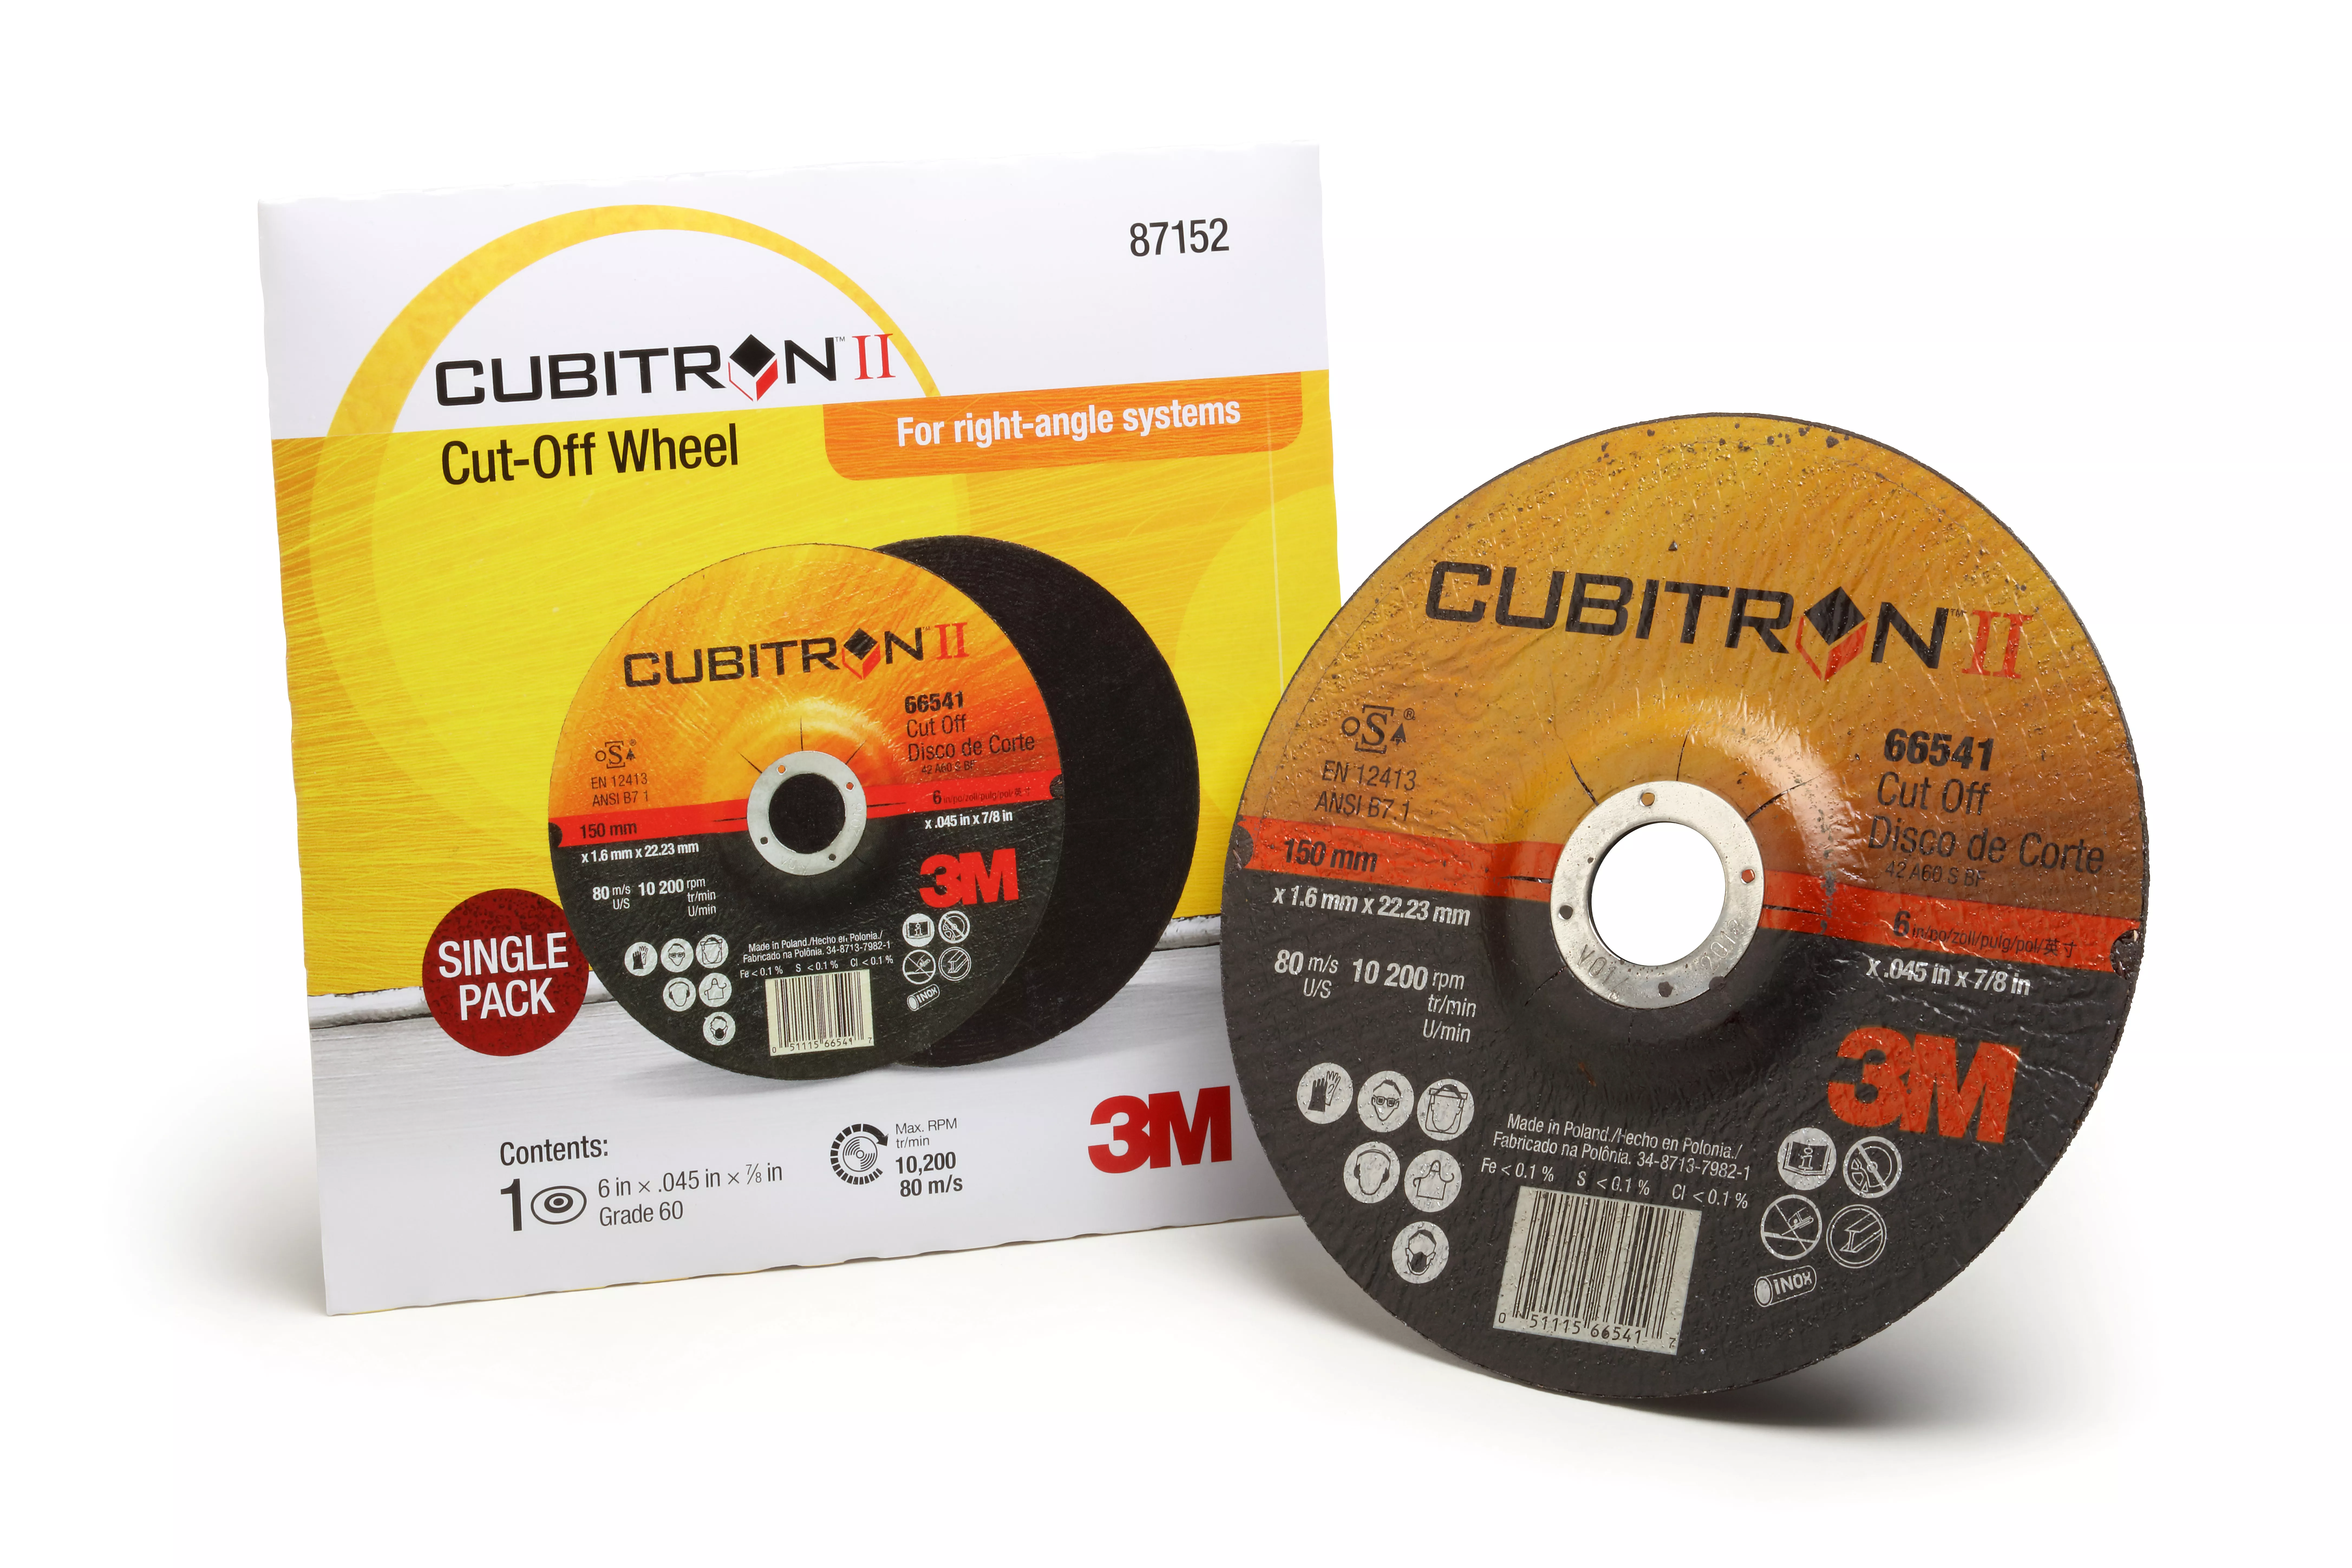 3M™ Cubitron™ II Cut Off Wheel, 87152, T27, 6 in x .045 in x 7/8 in,
Single Pack, 10 ea/Case